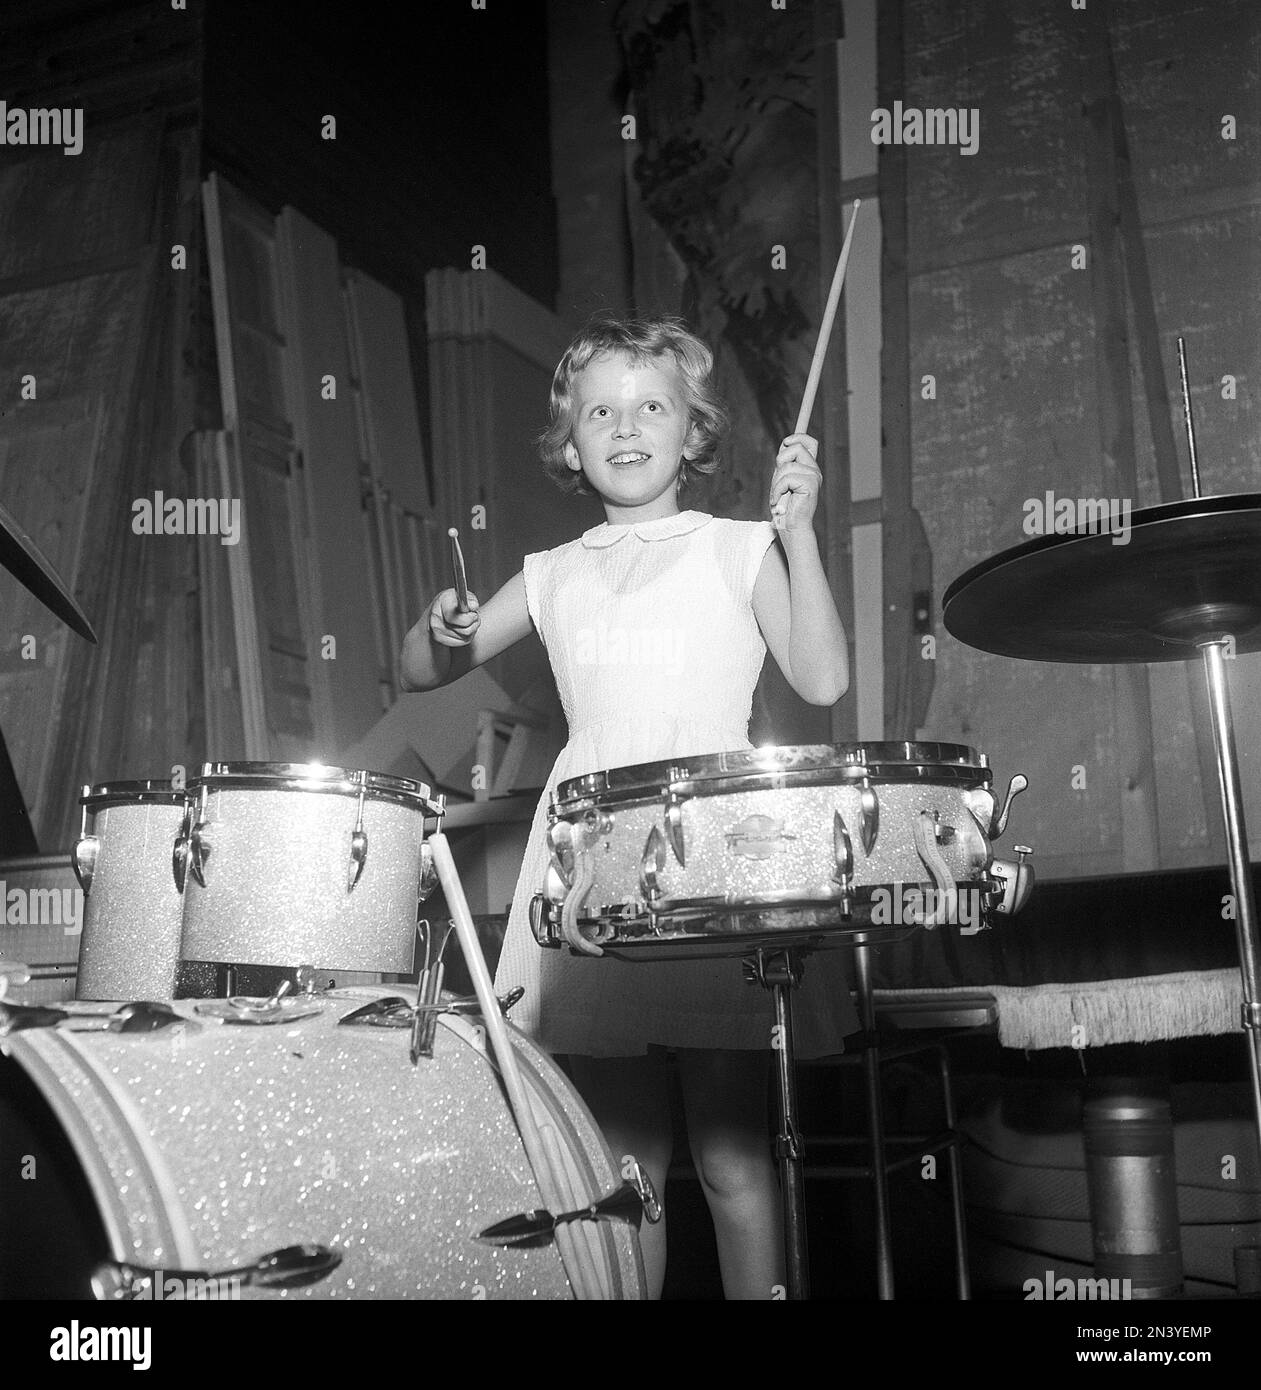 In den 1950er Jahren. Ein junges Mädchen, das Schlagzeug spielt. Das Jahr ist 1956 Schweden, Ref. BX39-1 Stockfoto